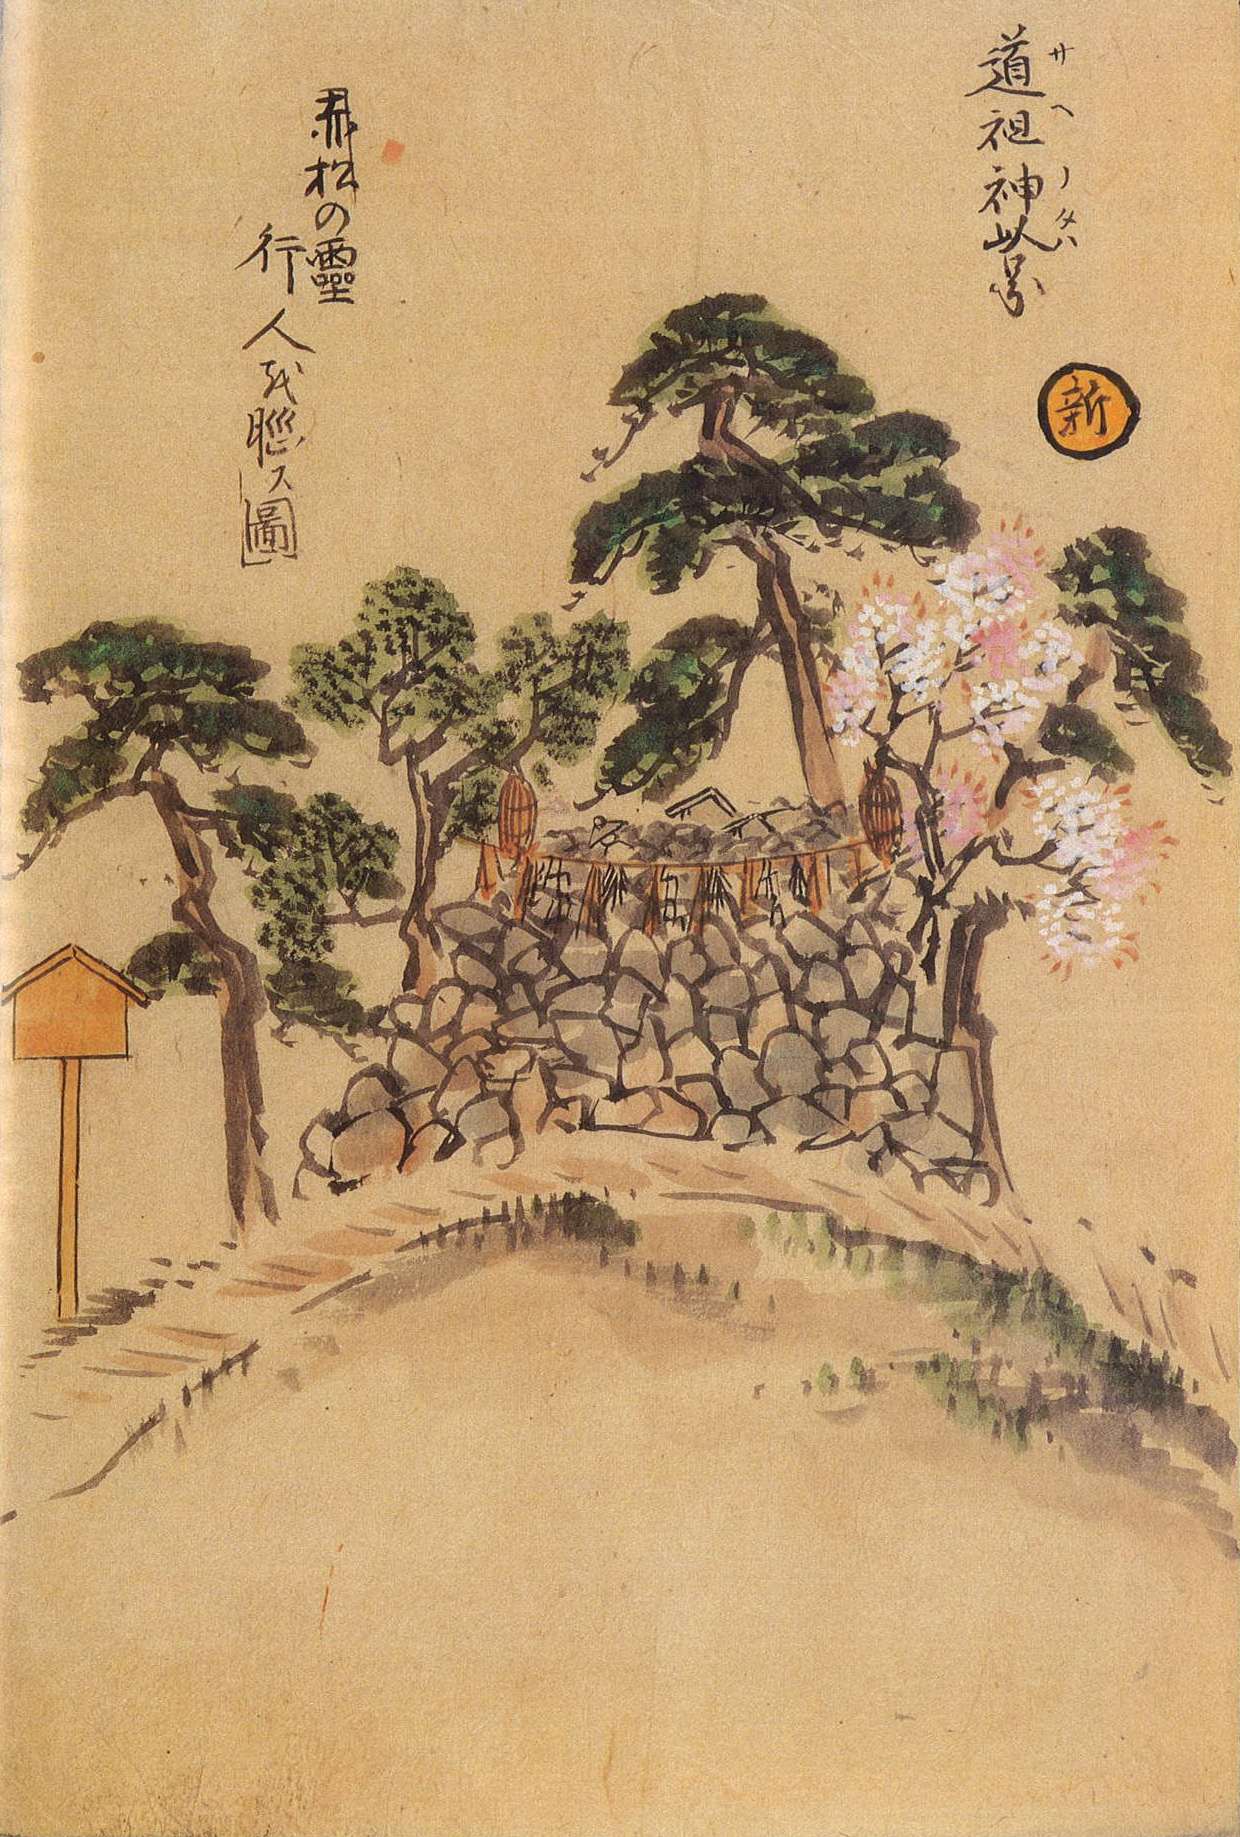 道祖神乢（サイノタワ）'s image 1